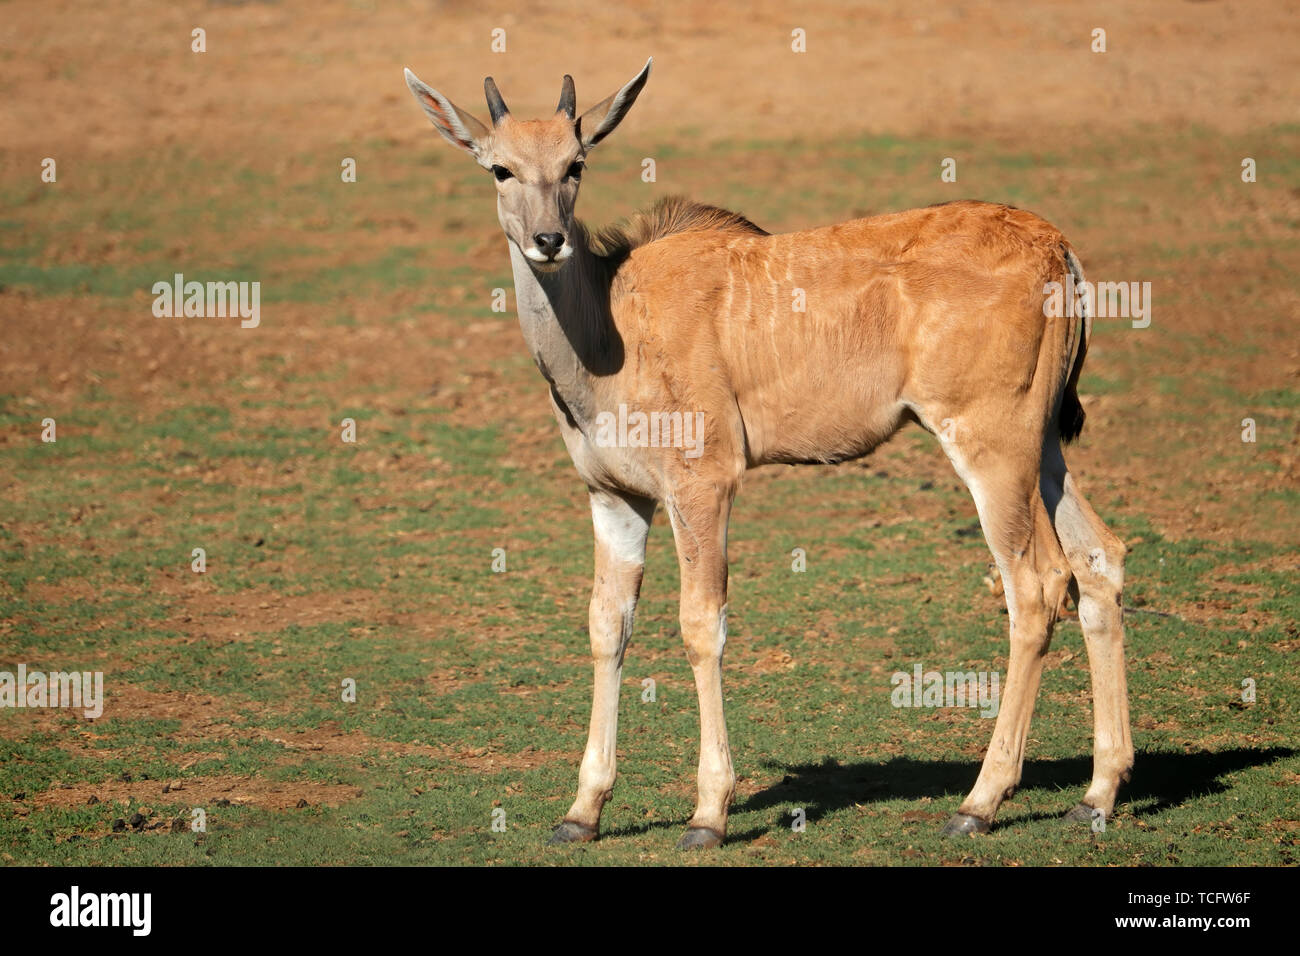 Les jeunes élands antilopes (Tragelaphus oryx) veau dans l'habitat naturel, l'Afrique du Sud Banque D'Images